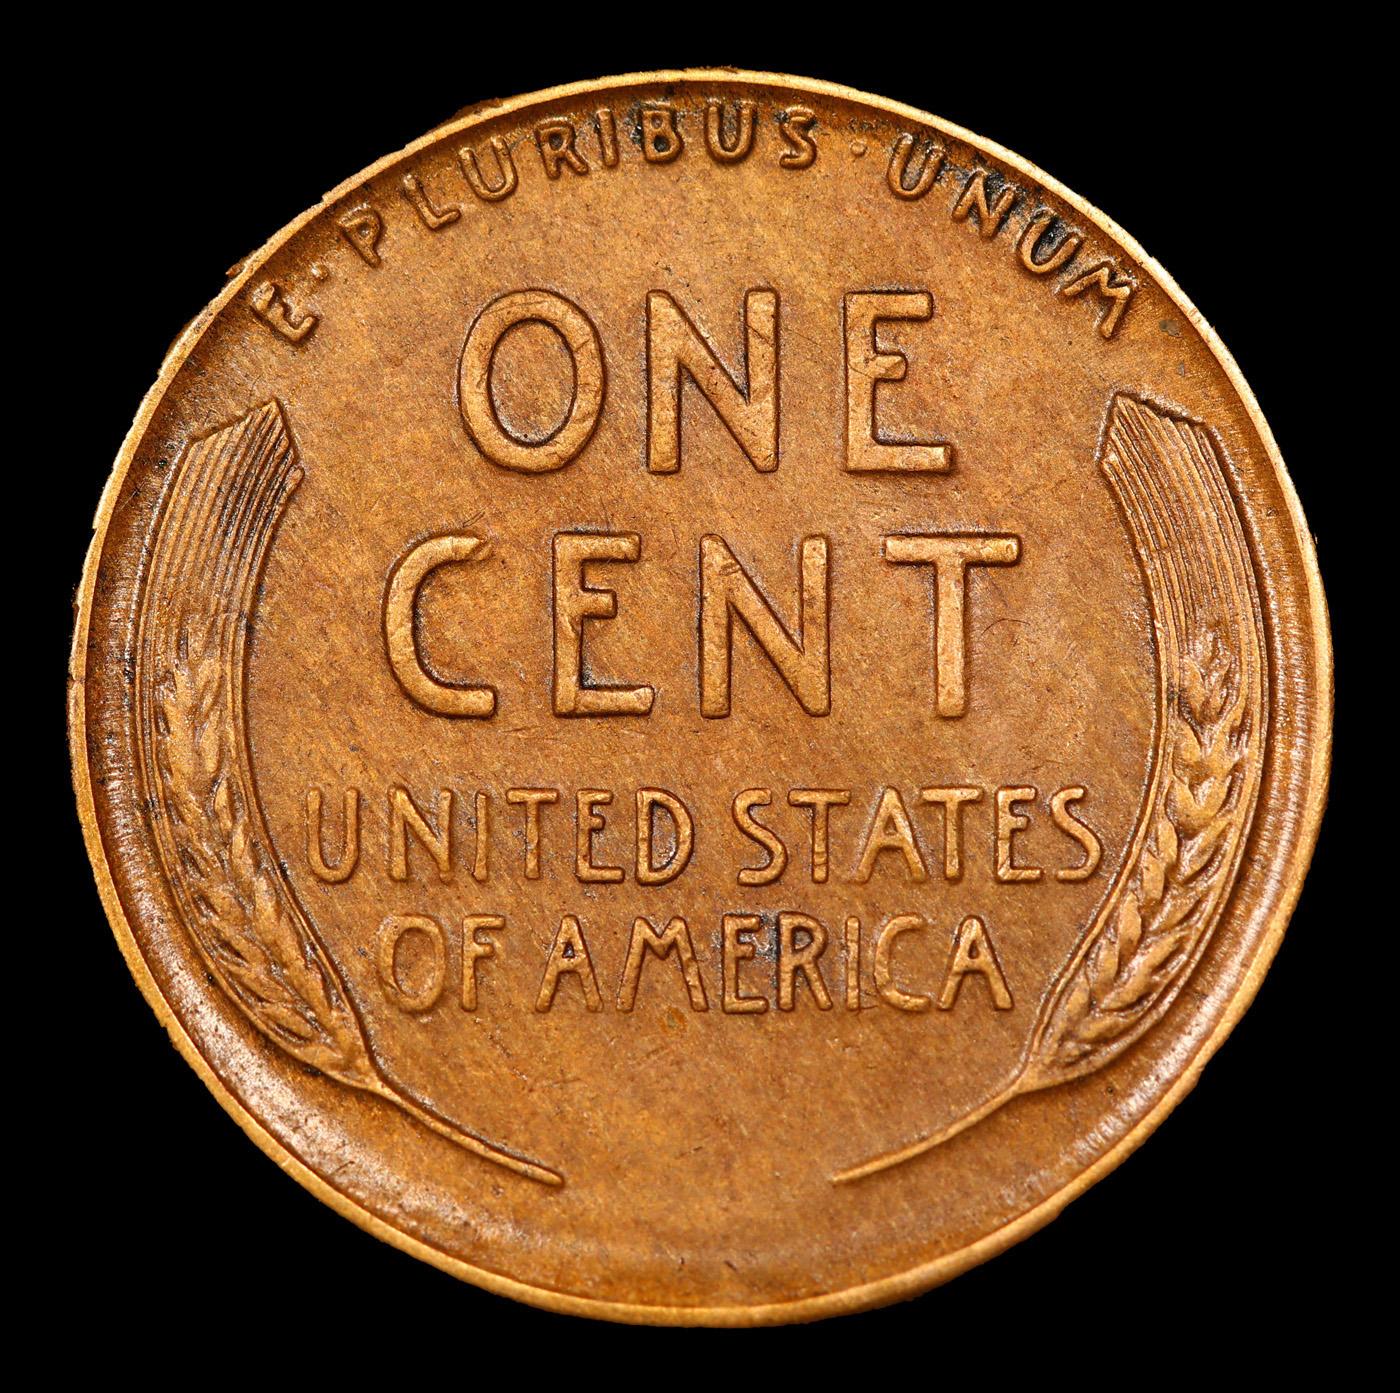 1926-s Lincoln Cent 1c Grades Select AU